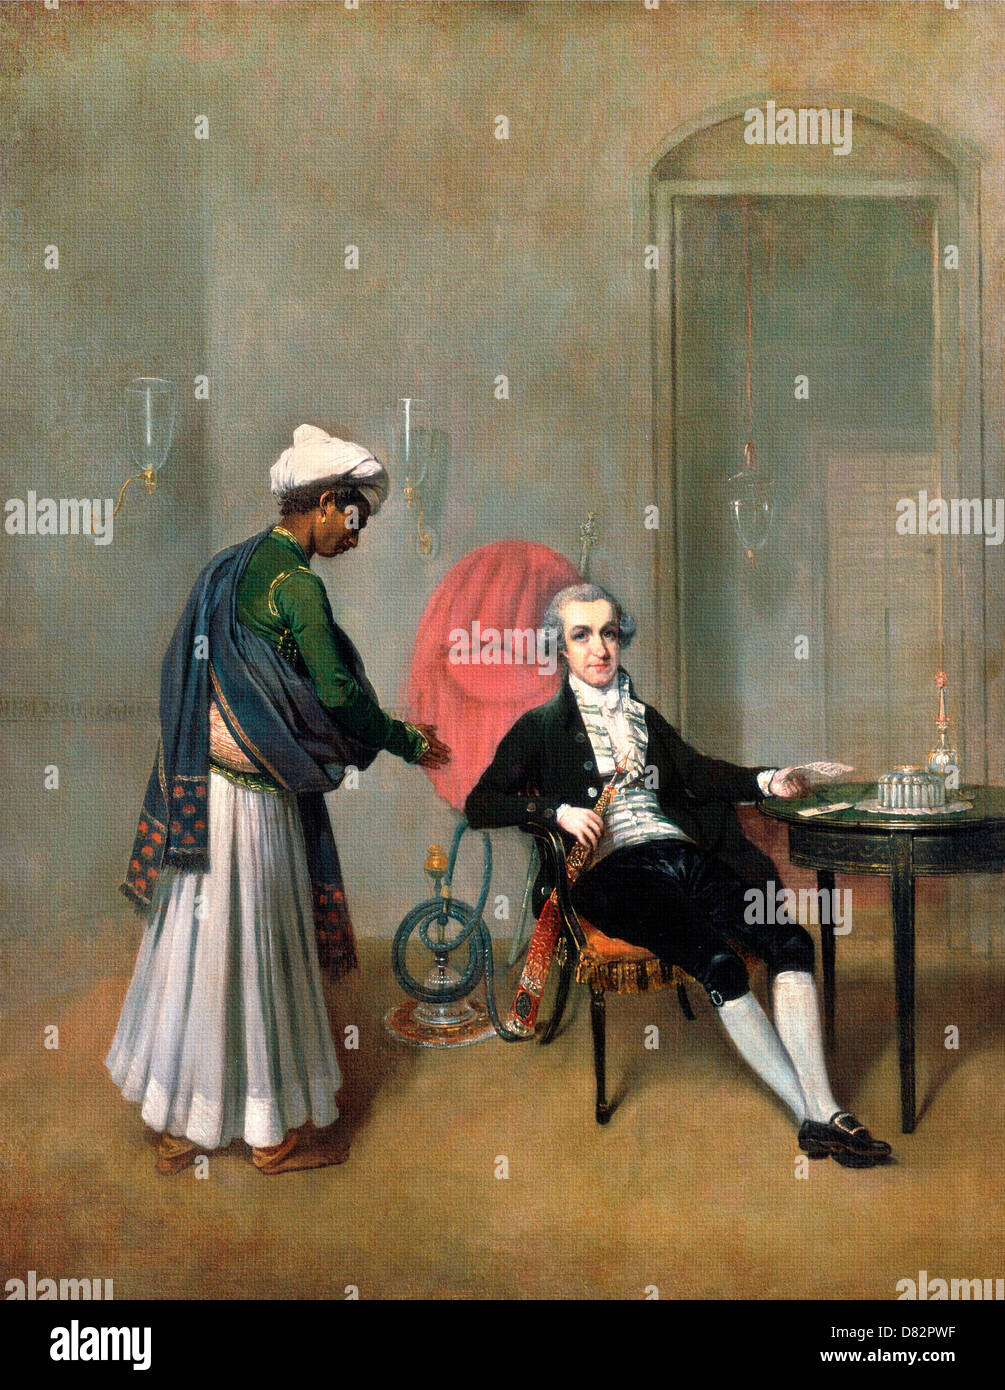 Arthur William Devis, Porträt von einem Gentleman, möglicherweise William Hickey und ein indischer Diener. Ca. 1785. Öl auf Leinwand. Stockfoto